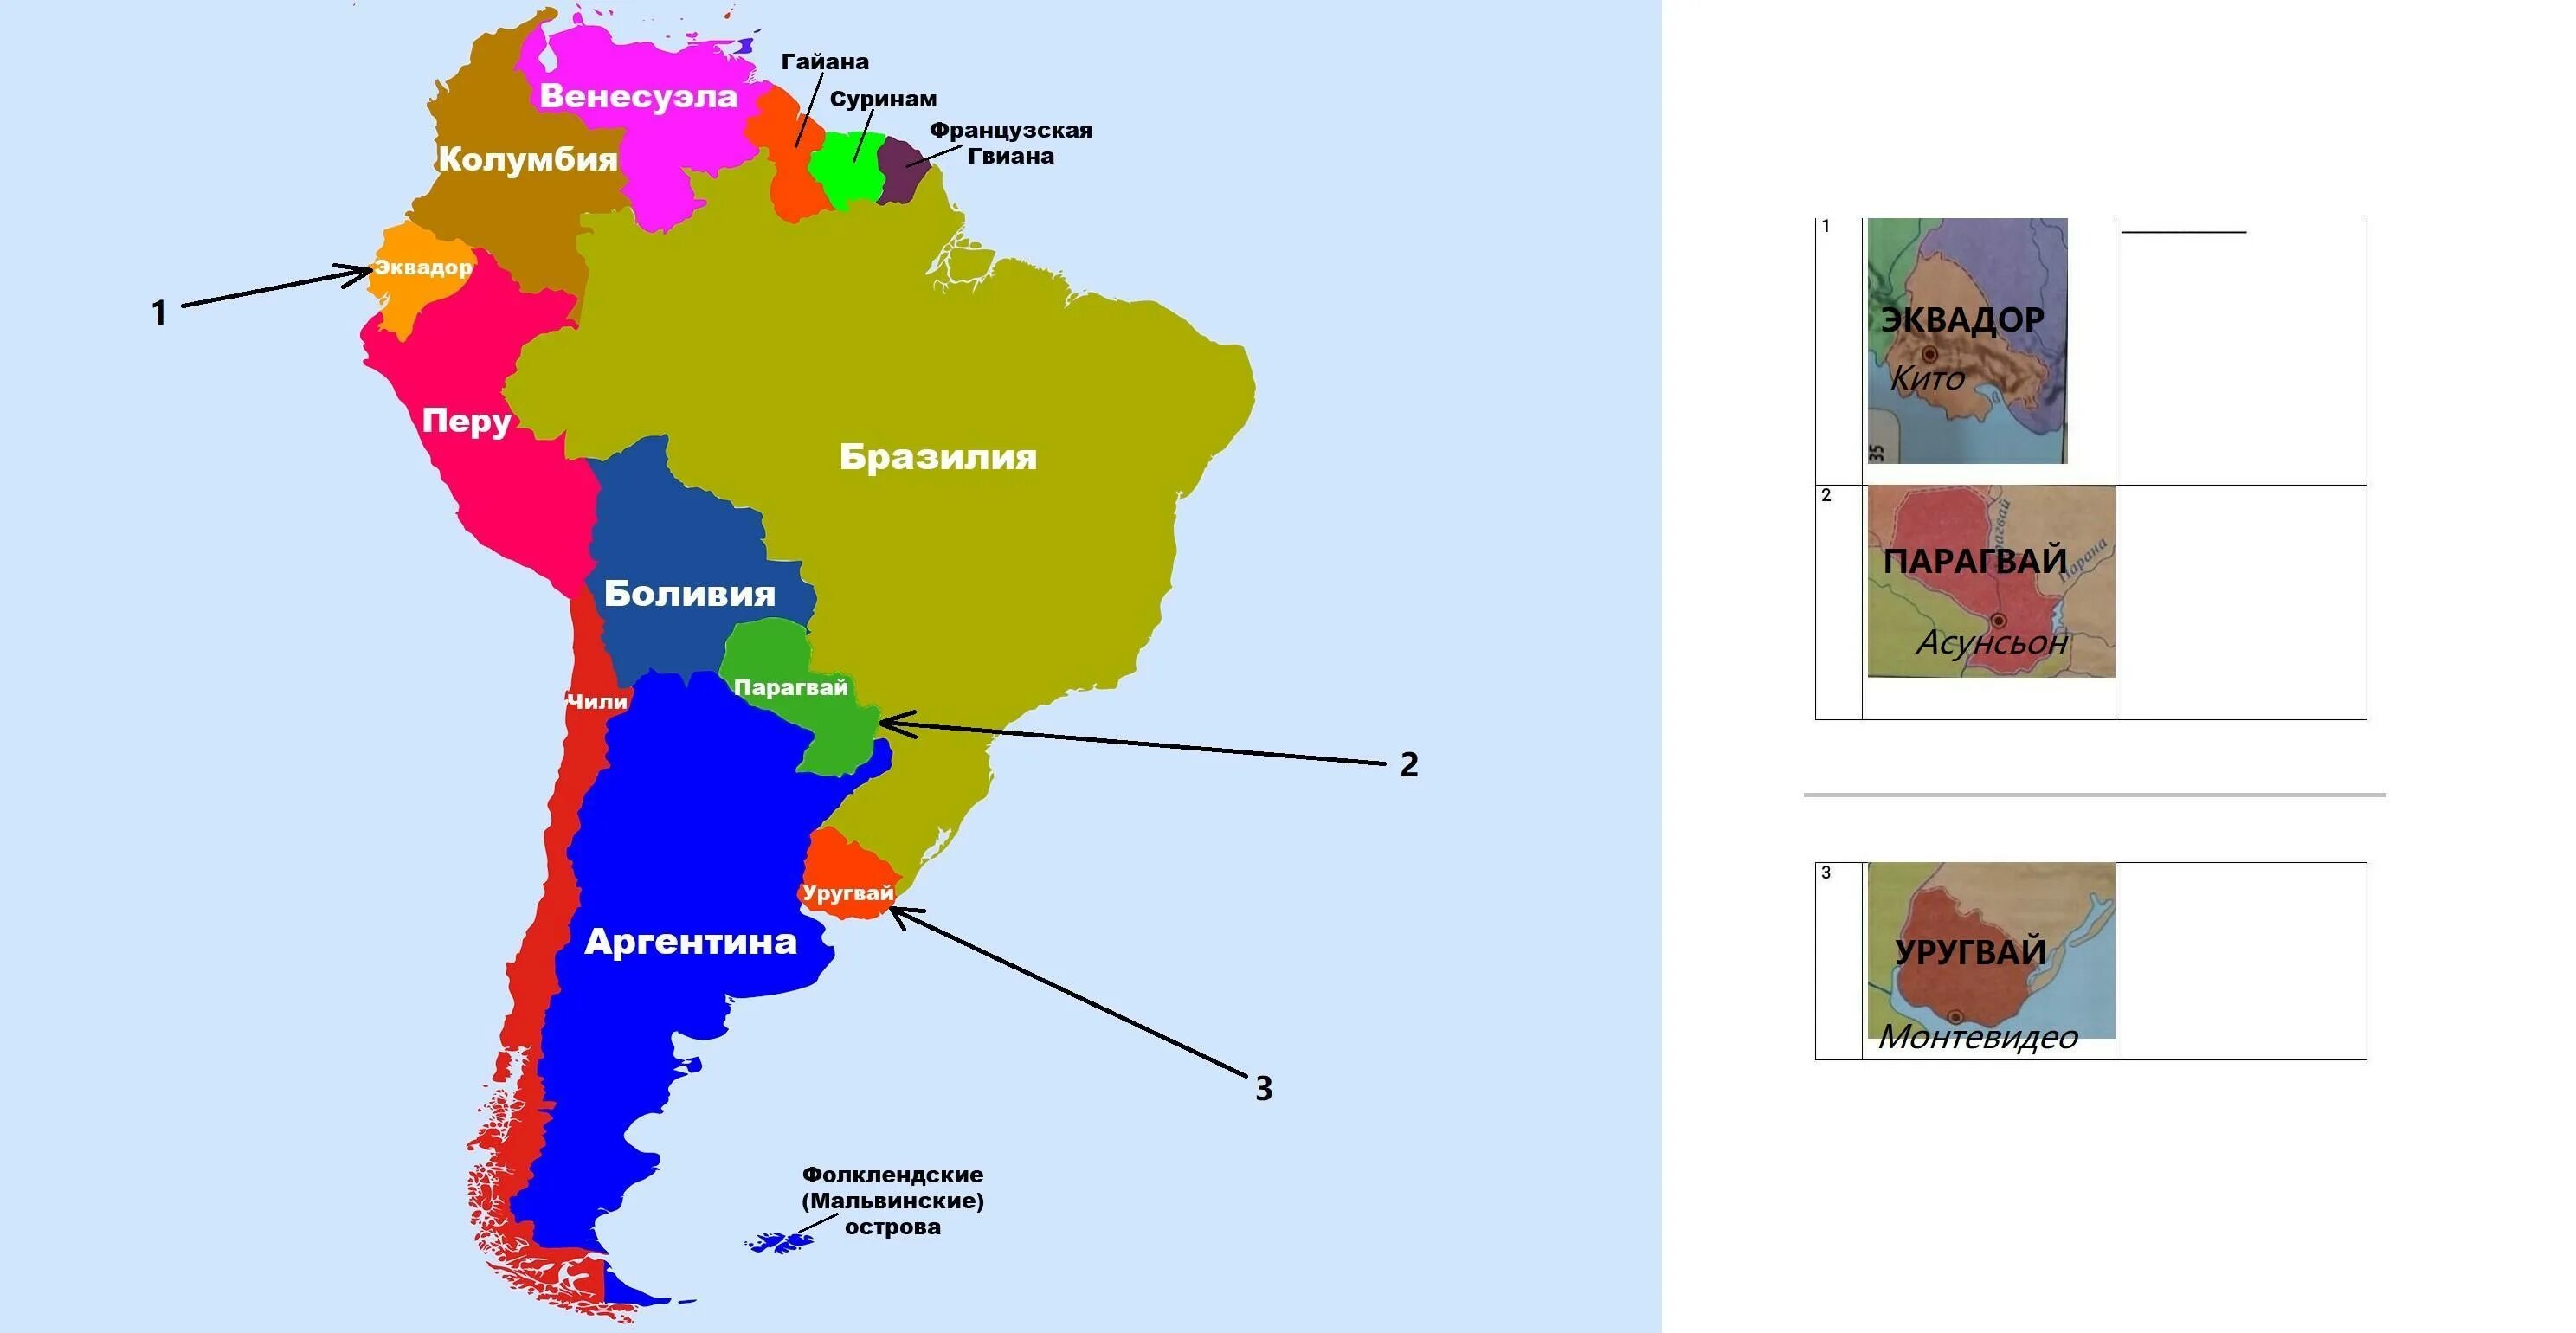 Политическая карта Южной Америки Америки. Государства Южной Америки на карте. Политичская крата Южной Америки. Южная Америк ана 4карте.